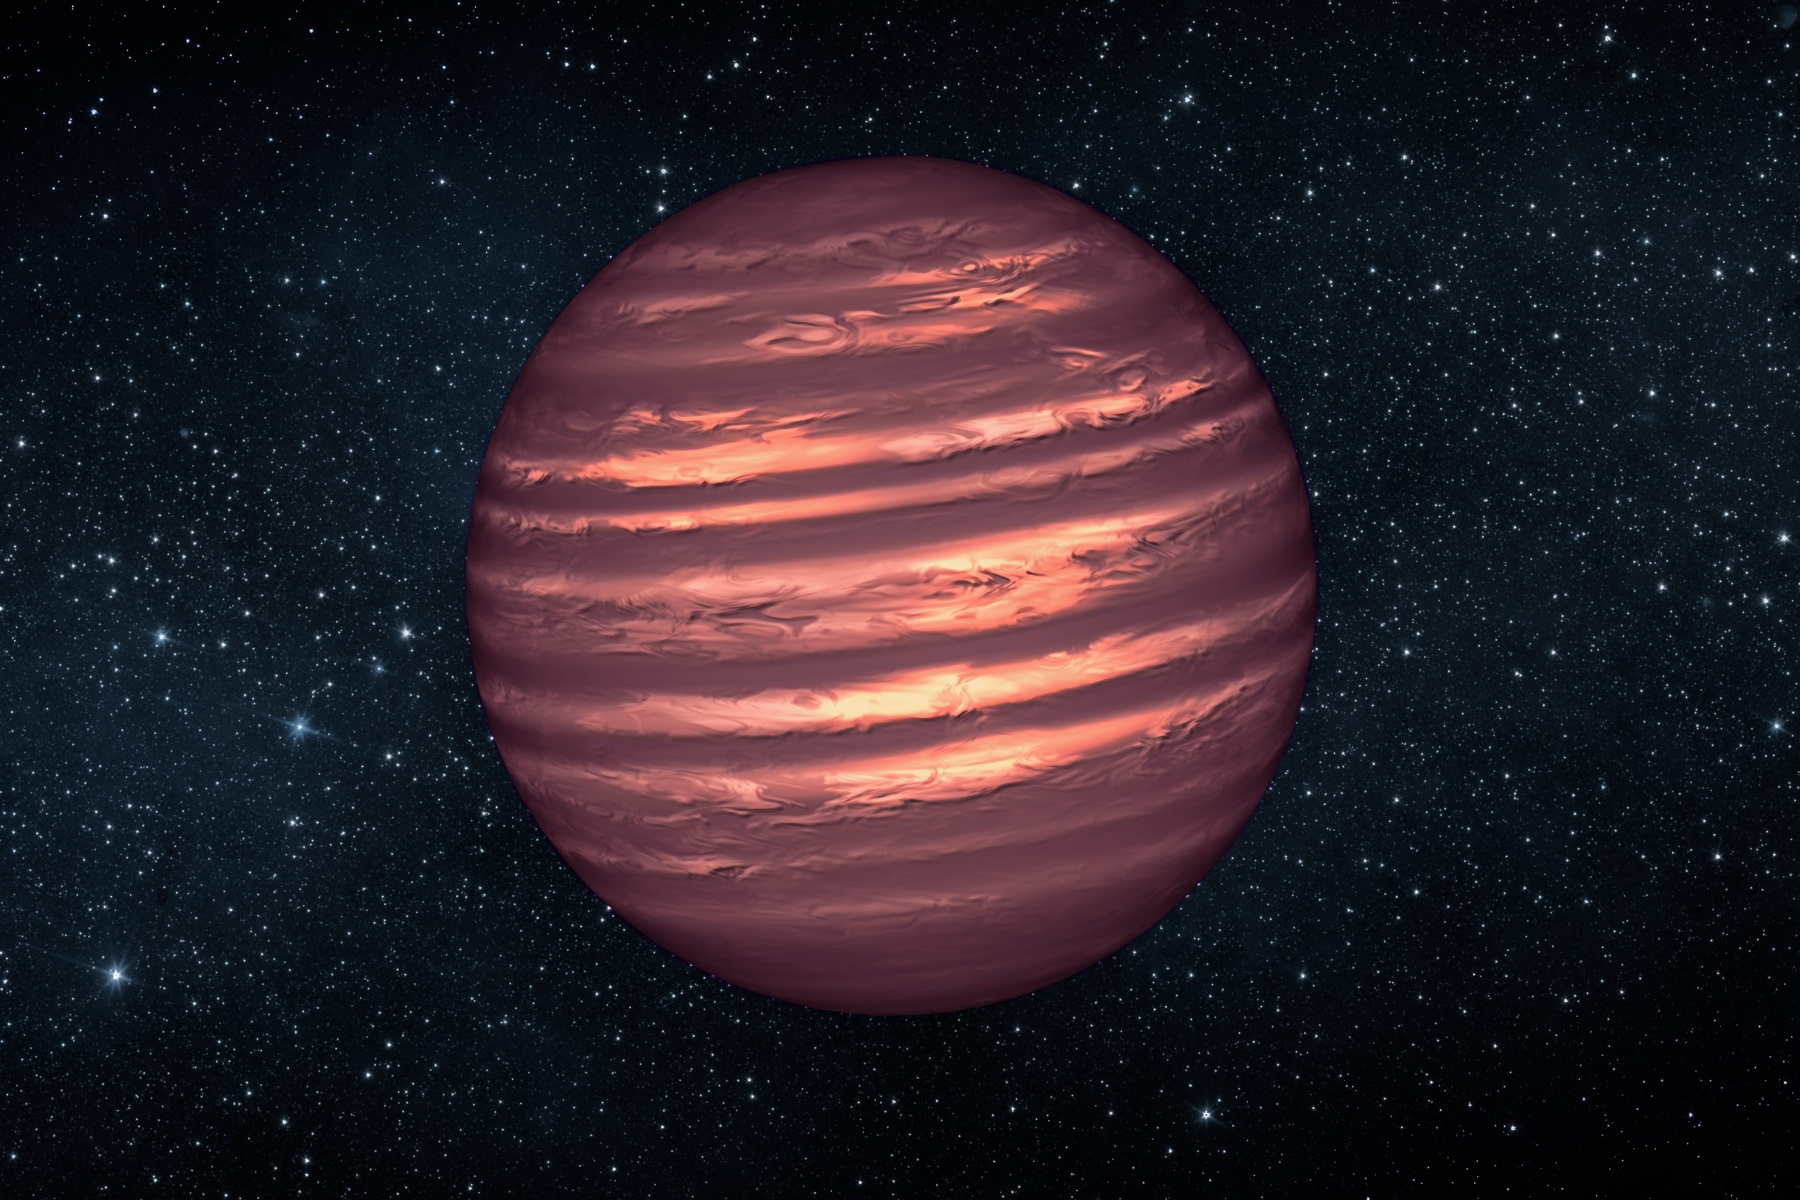 An artistic representation of the brown dwarf 2MASSJ22282889-431026. (Credit: NASA/JPL-Caltech)